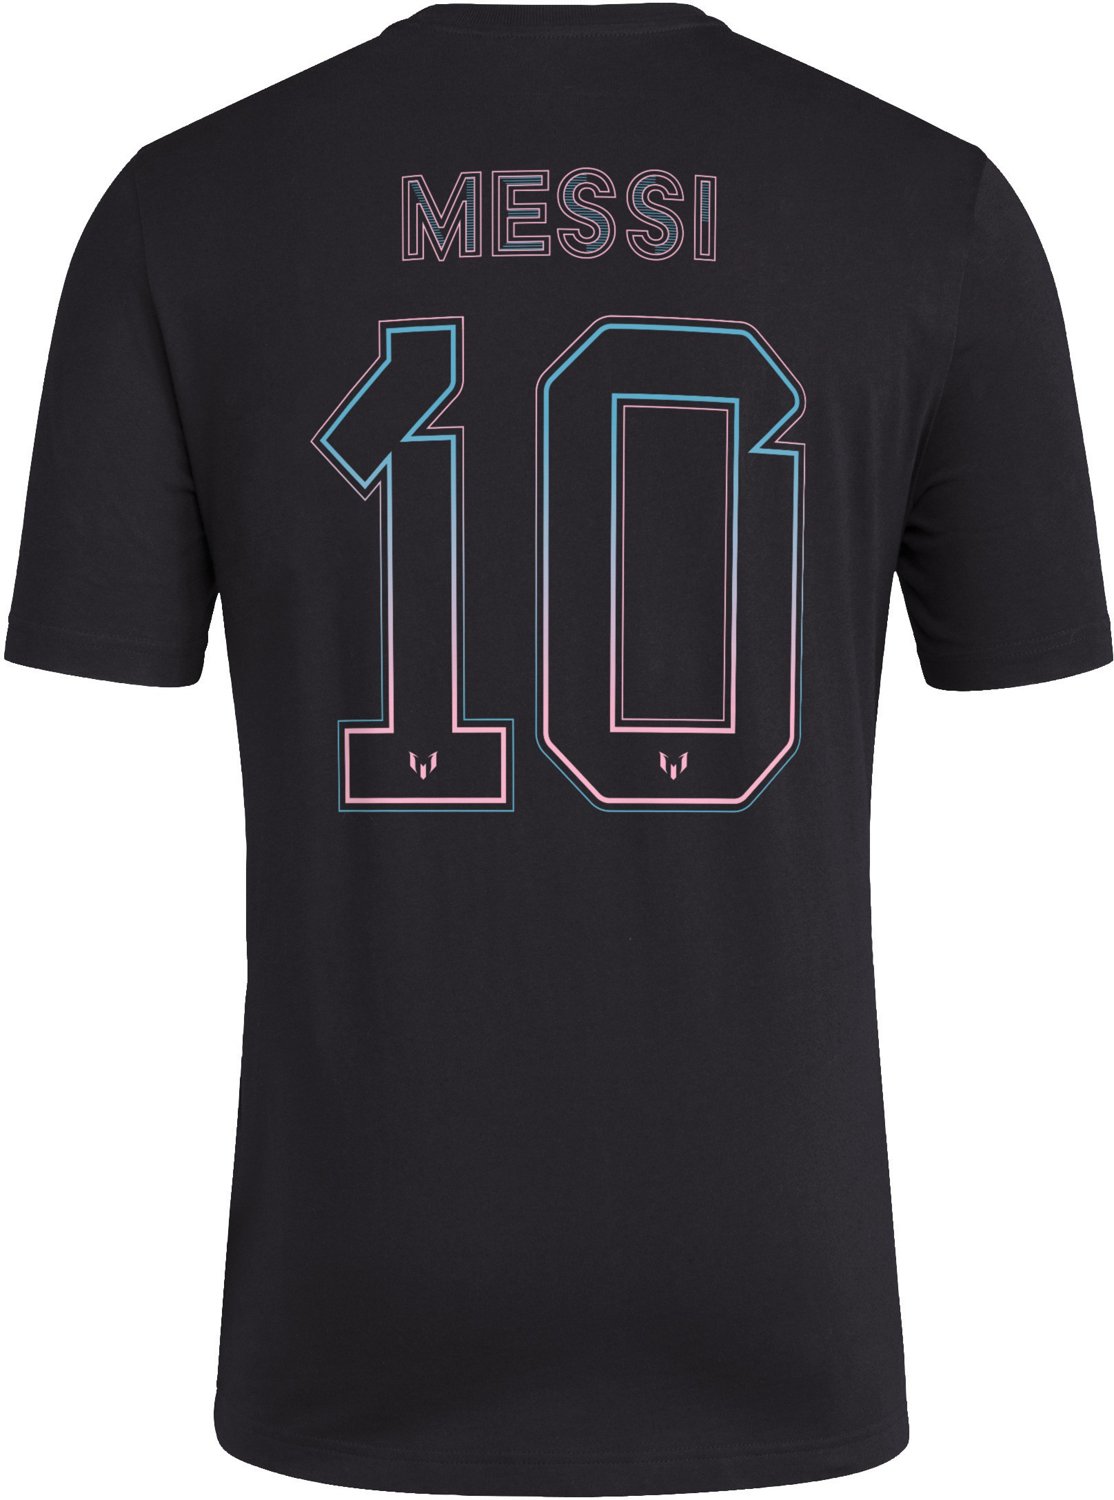 adidas Inter Miami CF Camiseta de Manga Corta con Nombre y Número de Messi  para Hombres